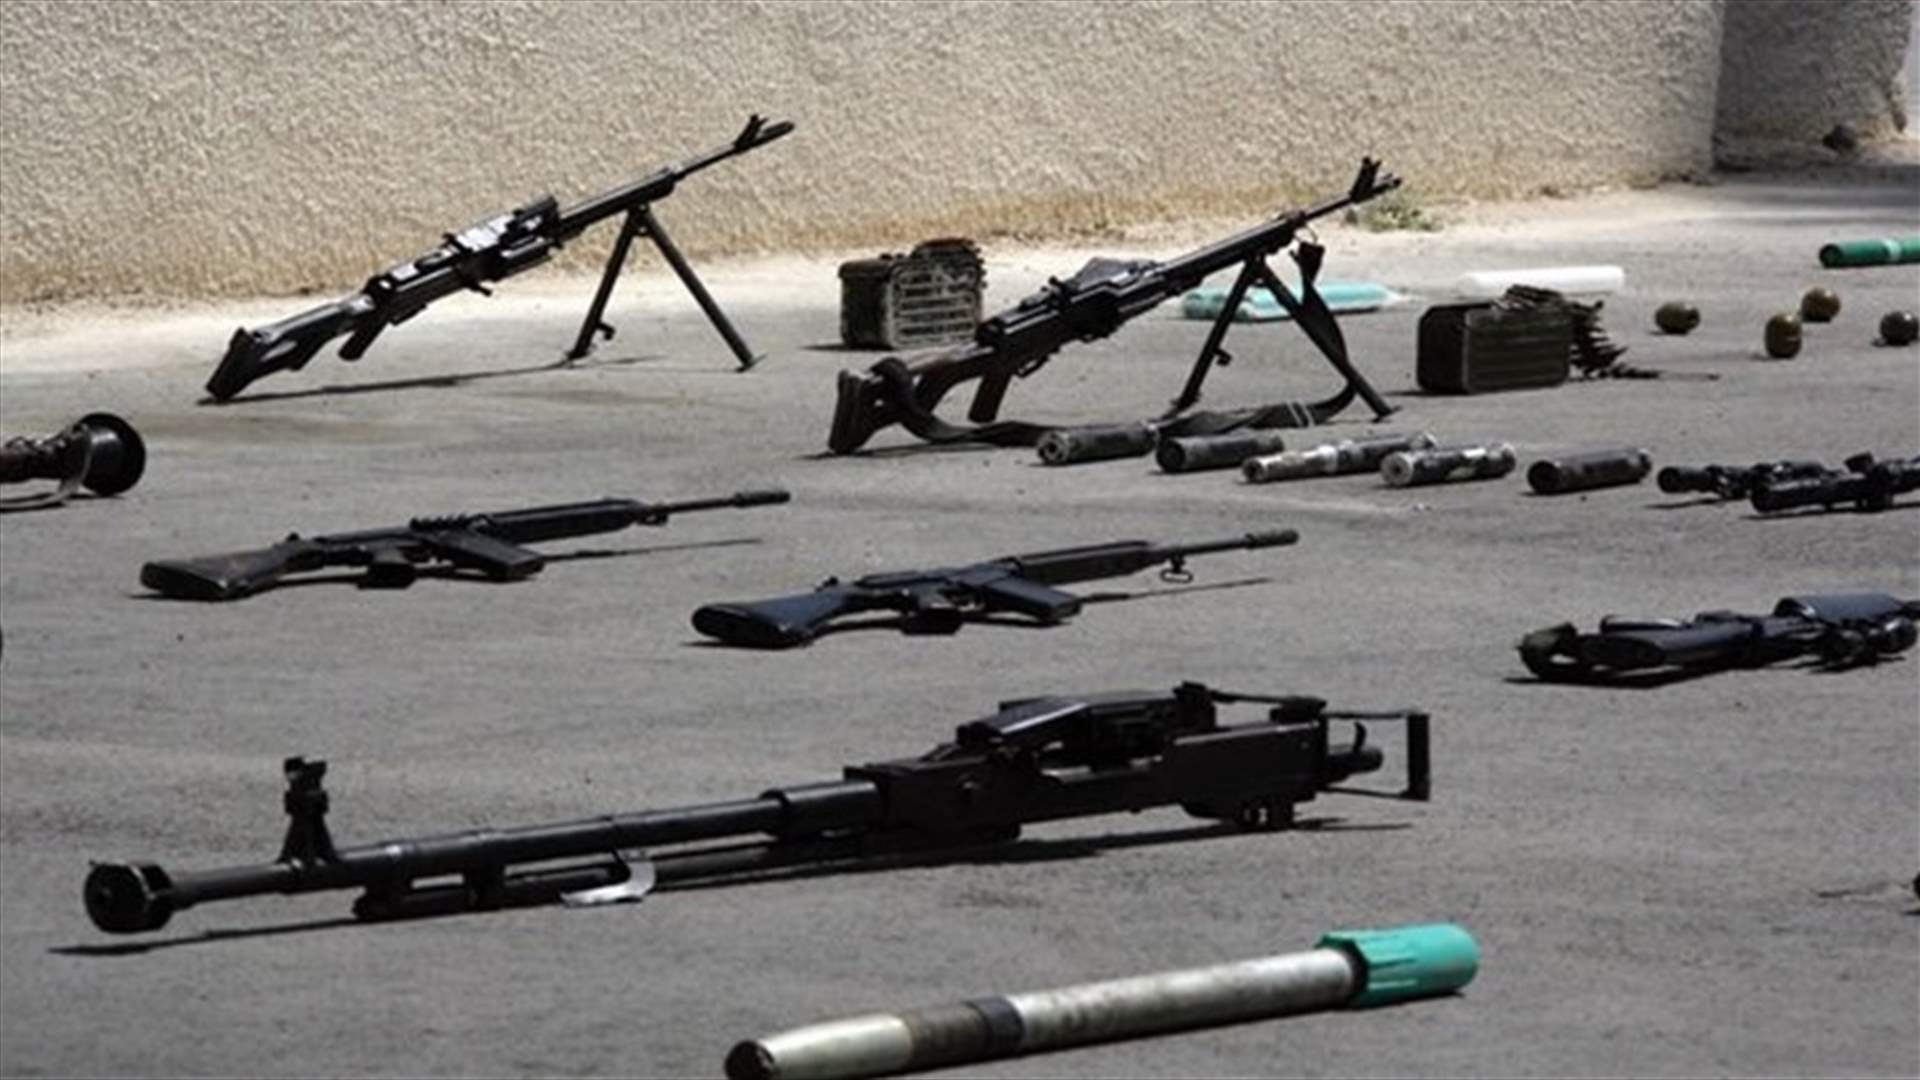 صور الاسلحة والذخائر التي ضبطت اثناء نقلها الى &quot;فتح الشام&quot;...